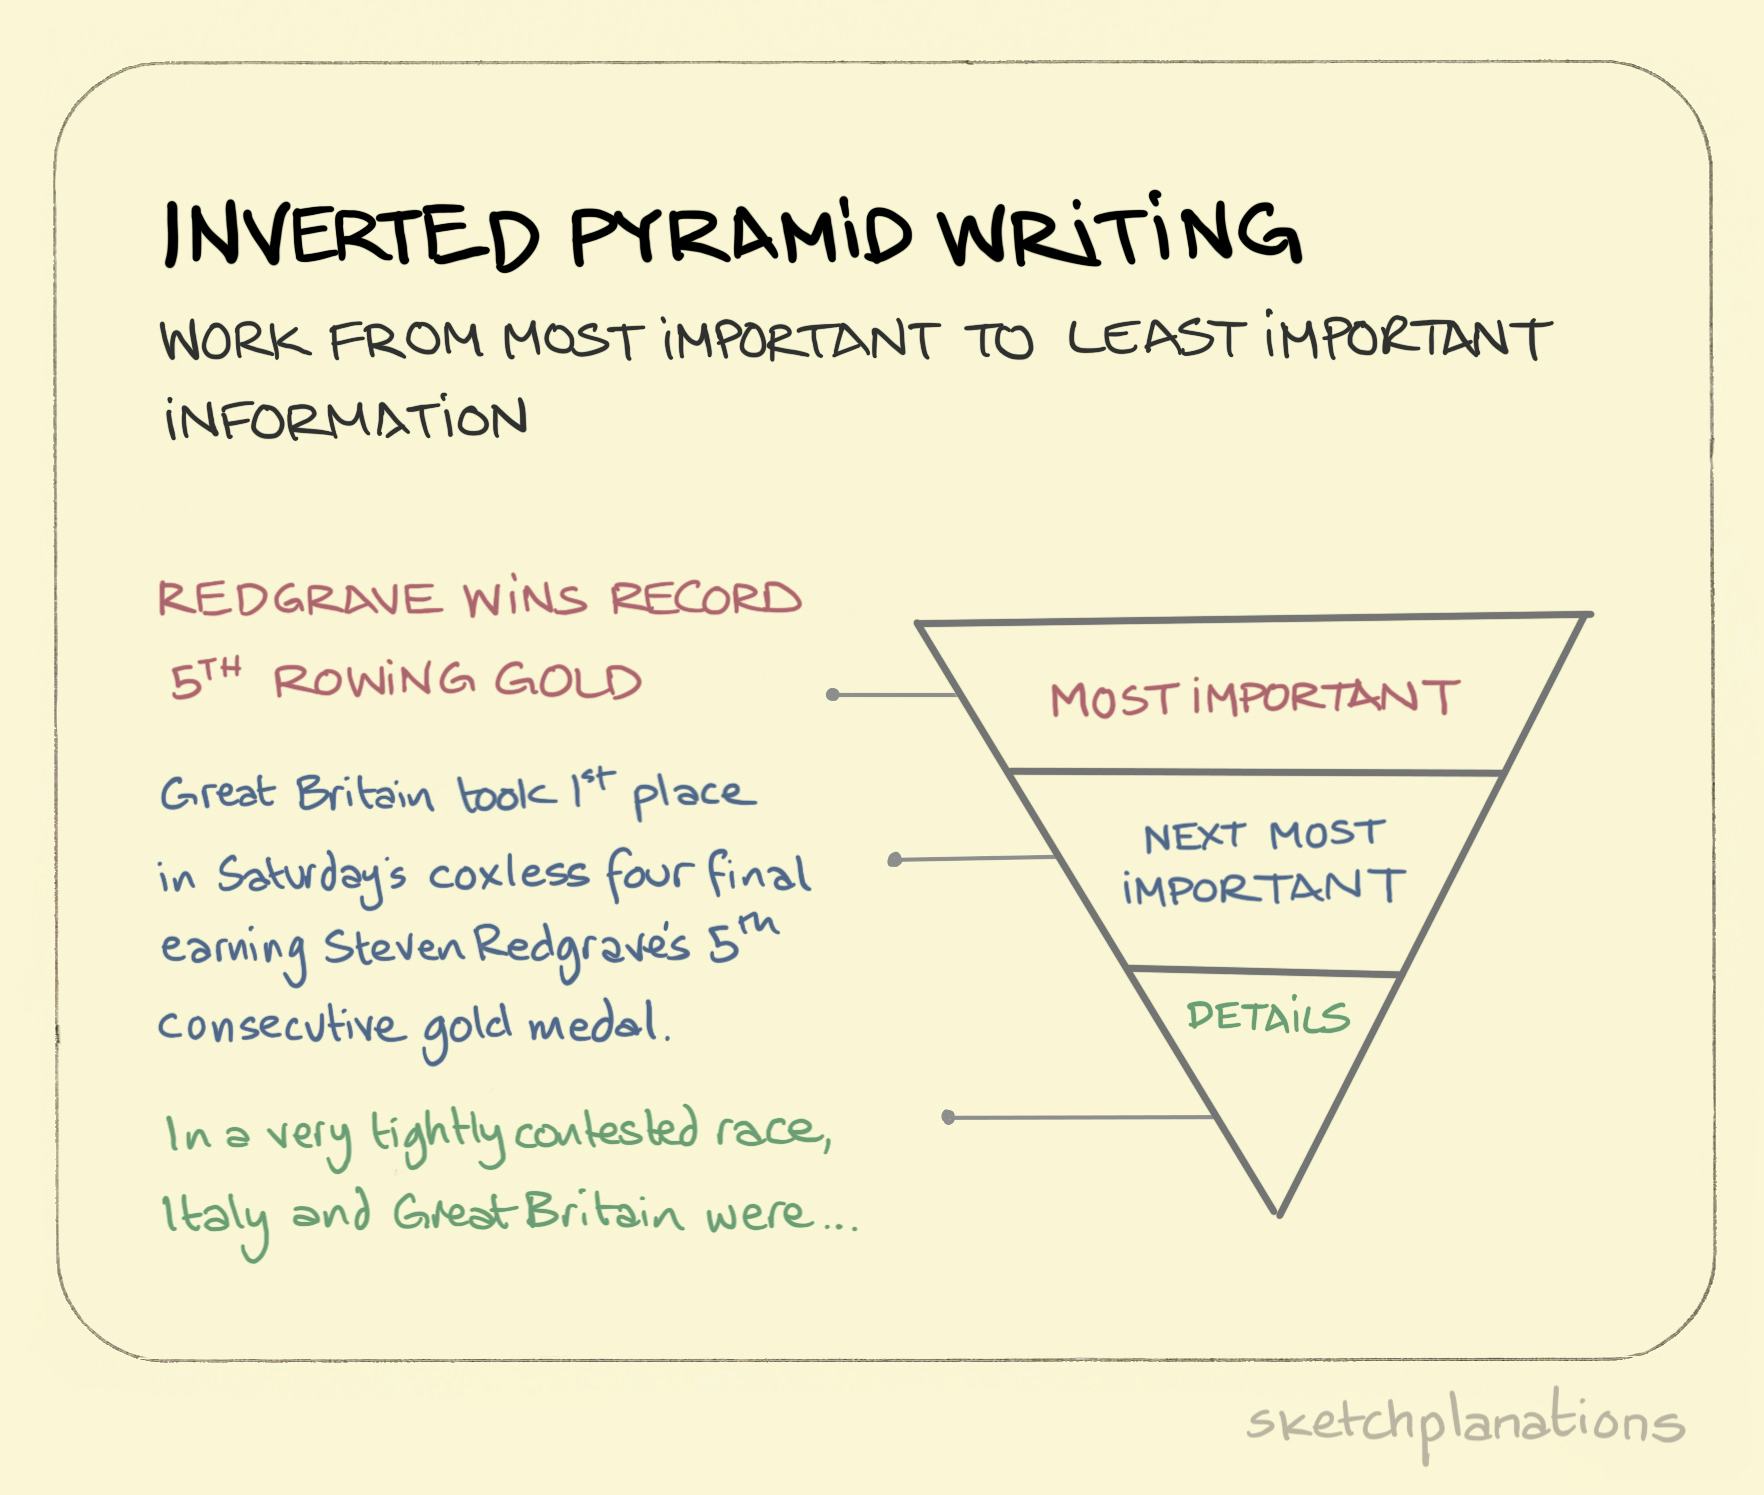 Inverted pyramid writing - Sketchplanations